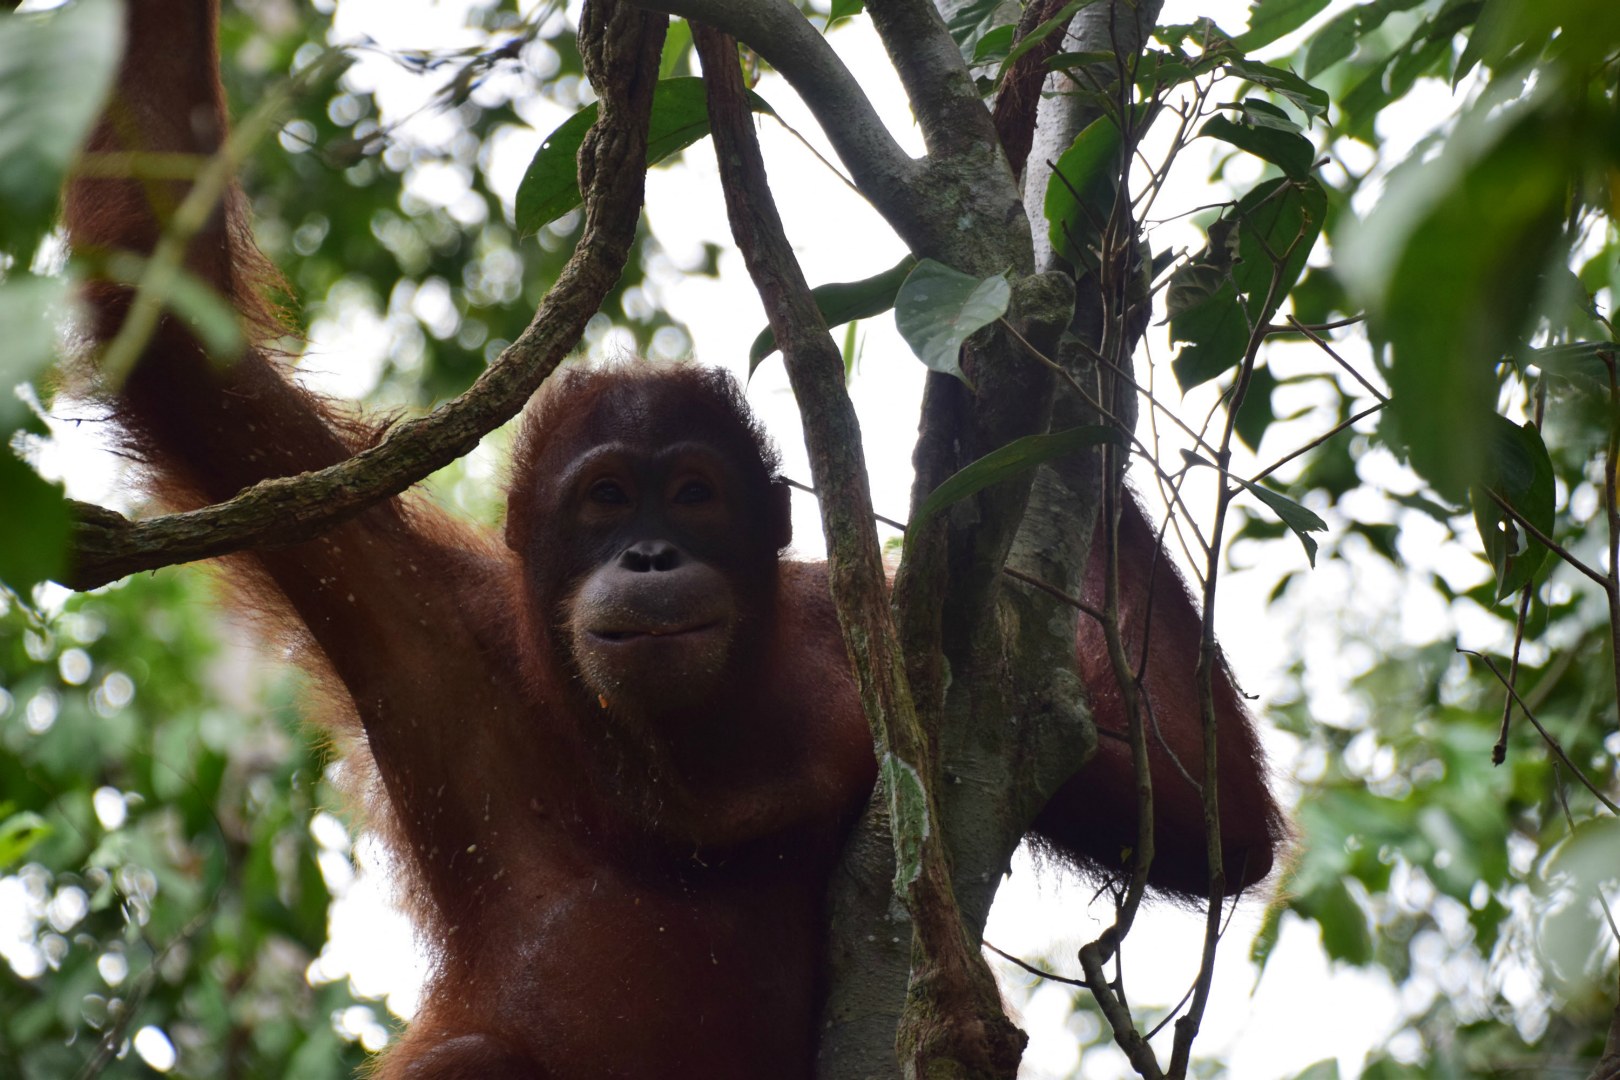 Orangutan, Sepilok Orangutan Rehabilitation Centre